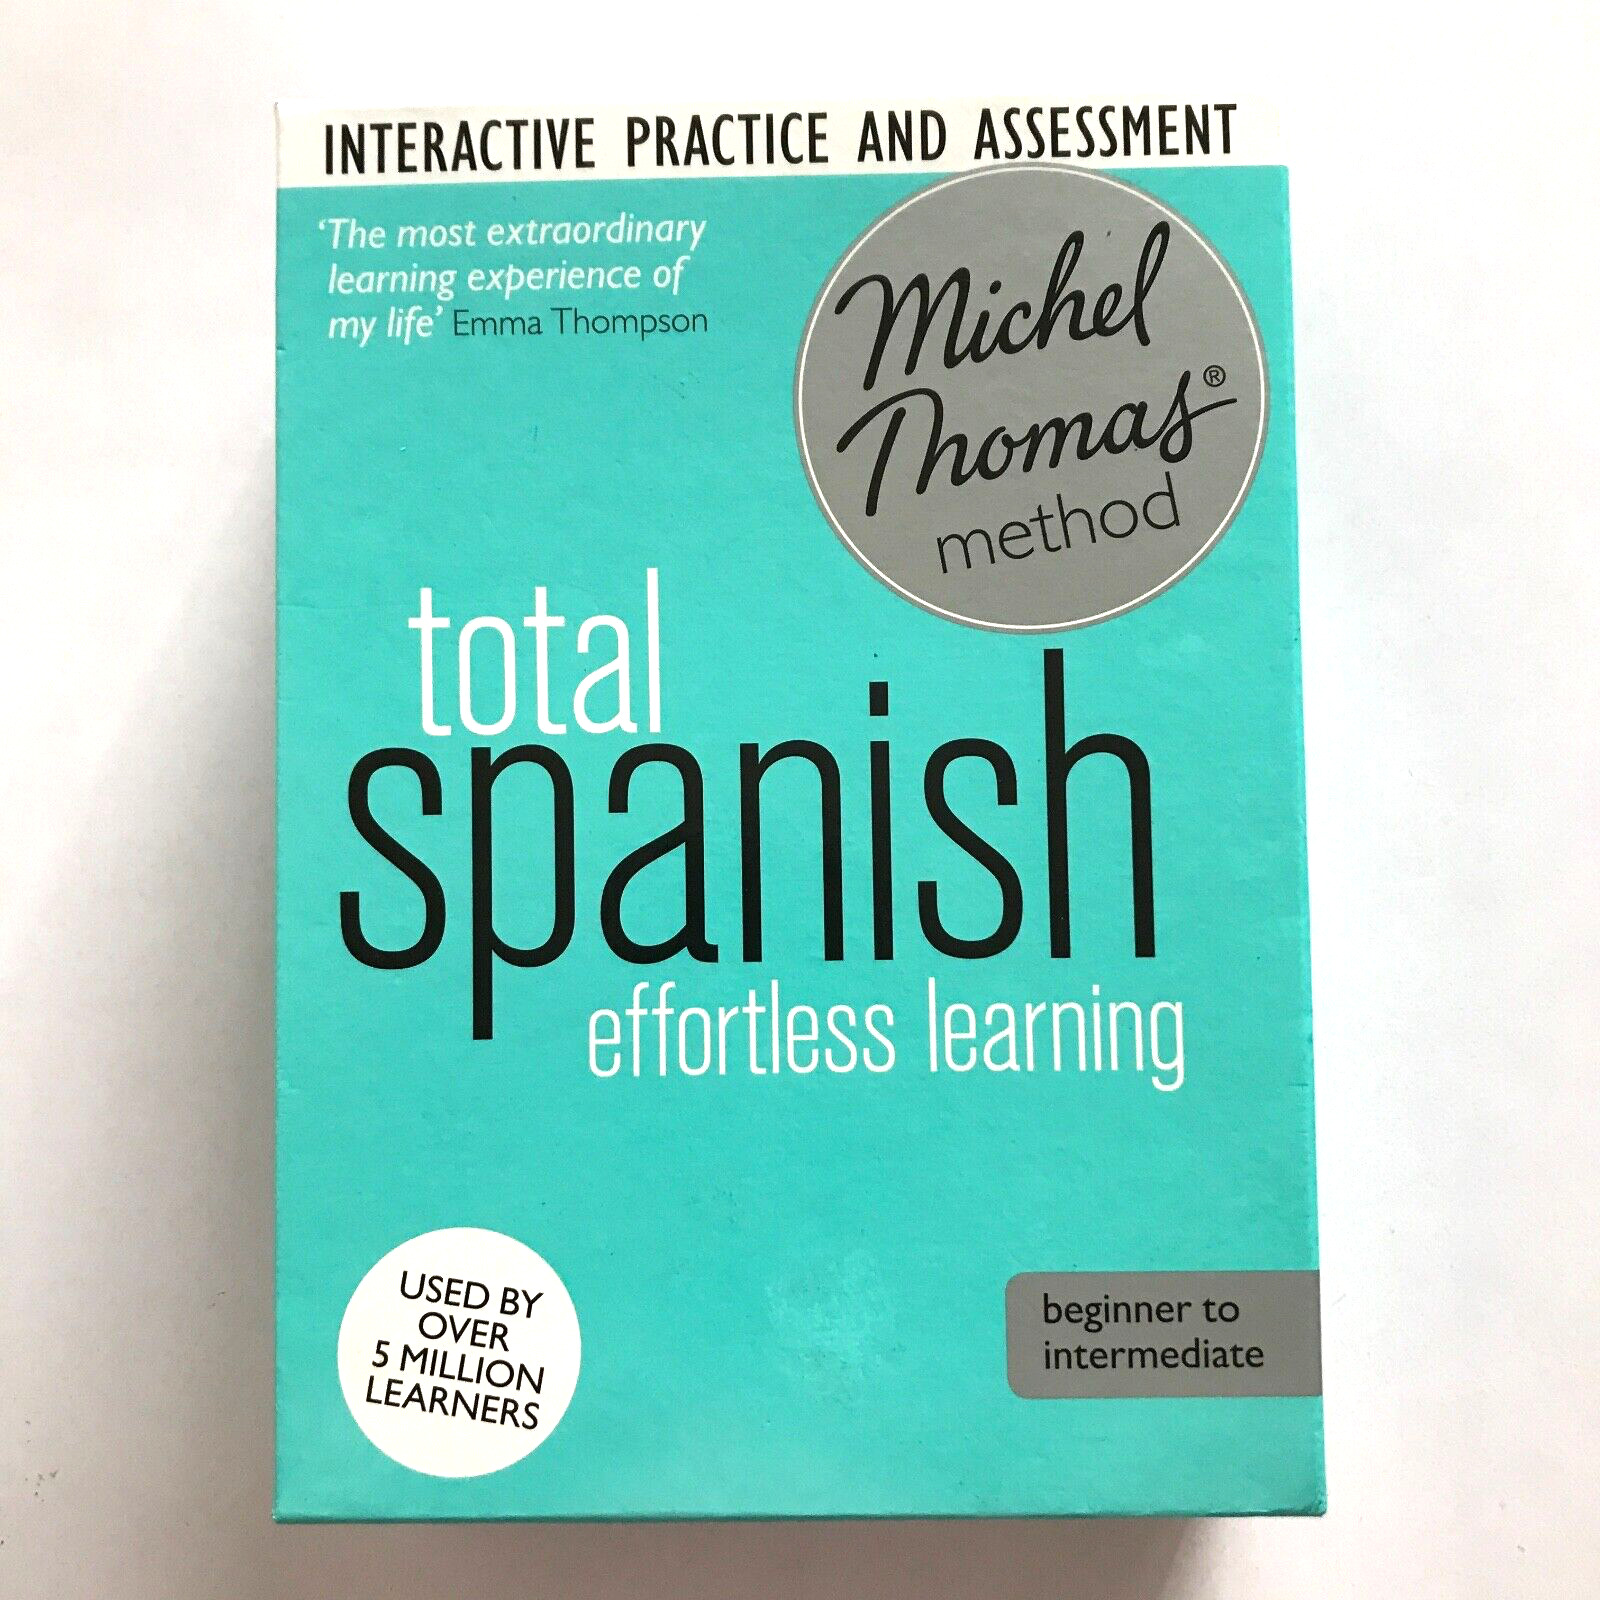 Spanish Effortless Learning Beginner To Intermediate M. Thomas Method CD/CD-ROM